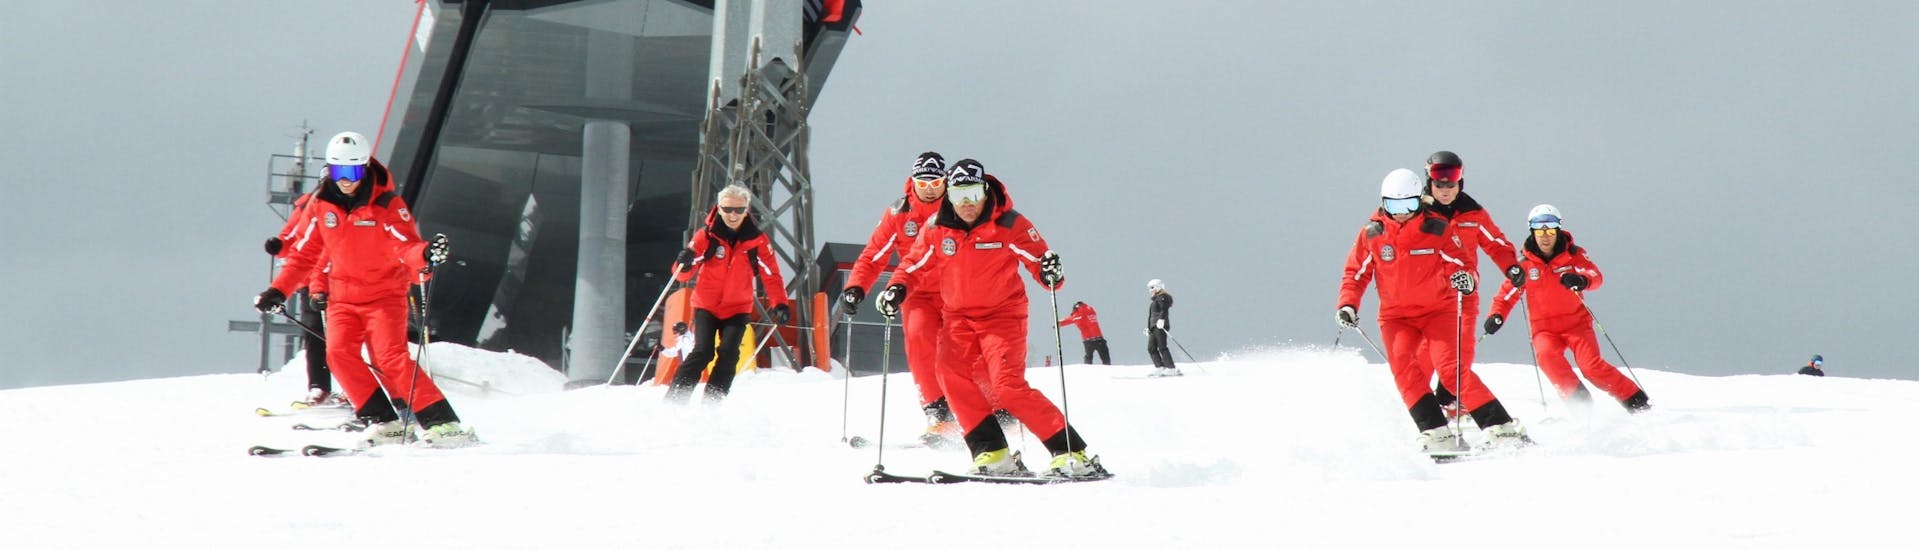 Alcuni maestri di sci della Ski School Top Ski Piculin San Vigilio stanno scendendo da una pista di San Vigilio di Marebbe.